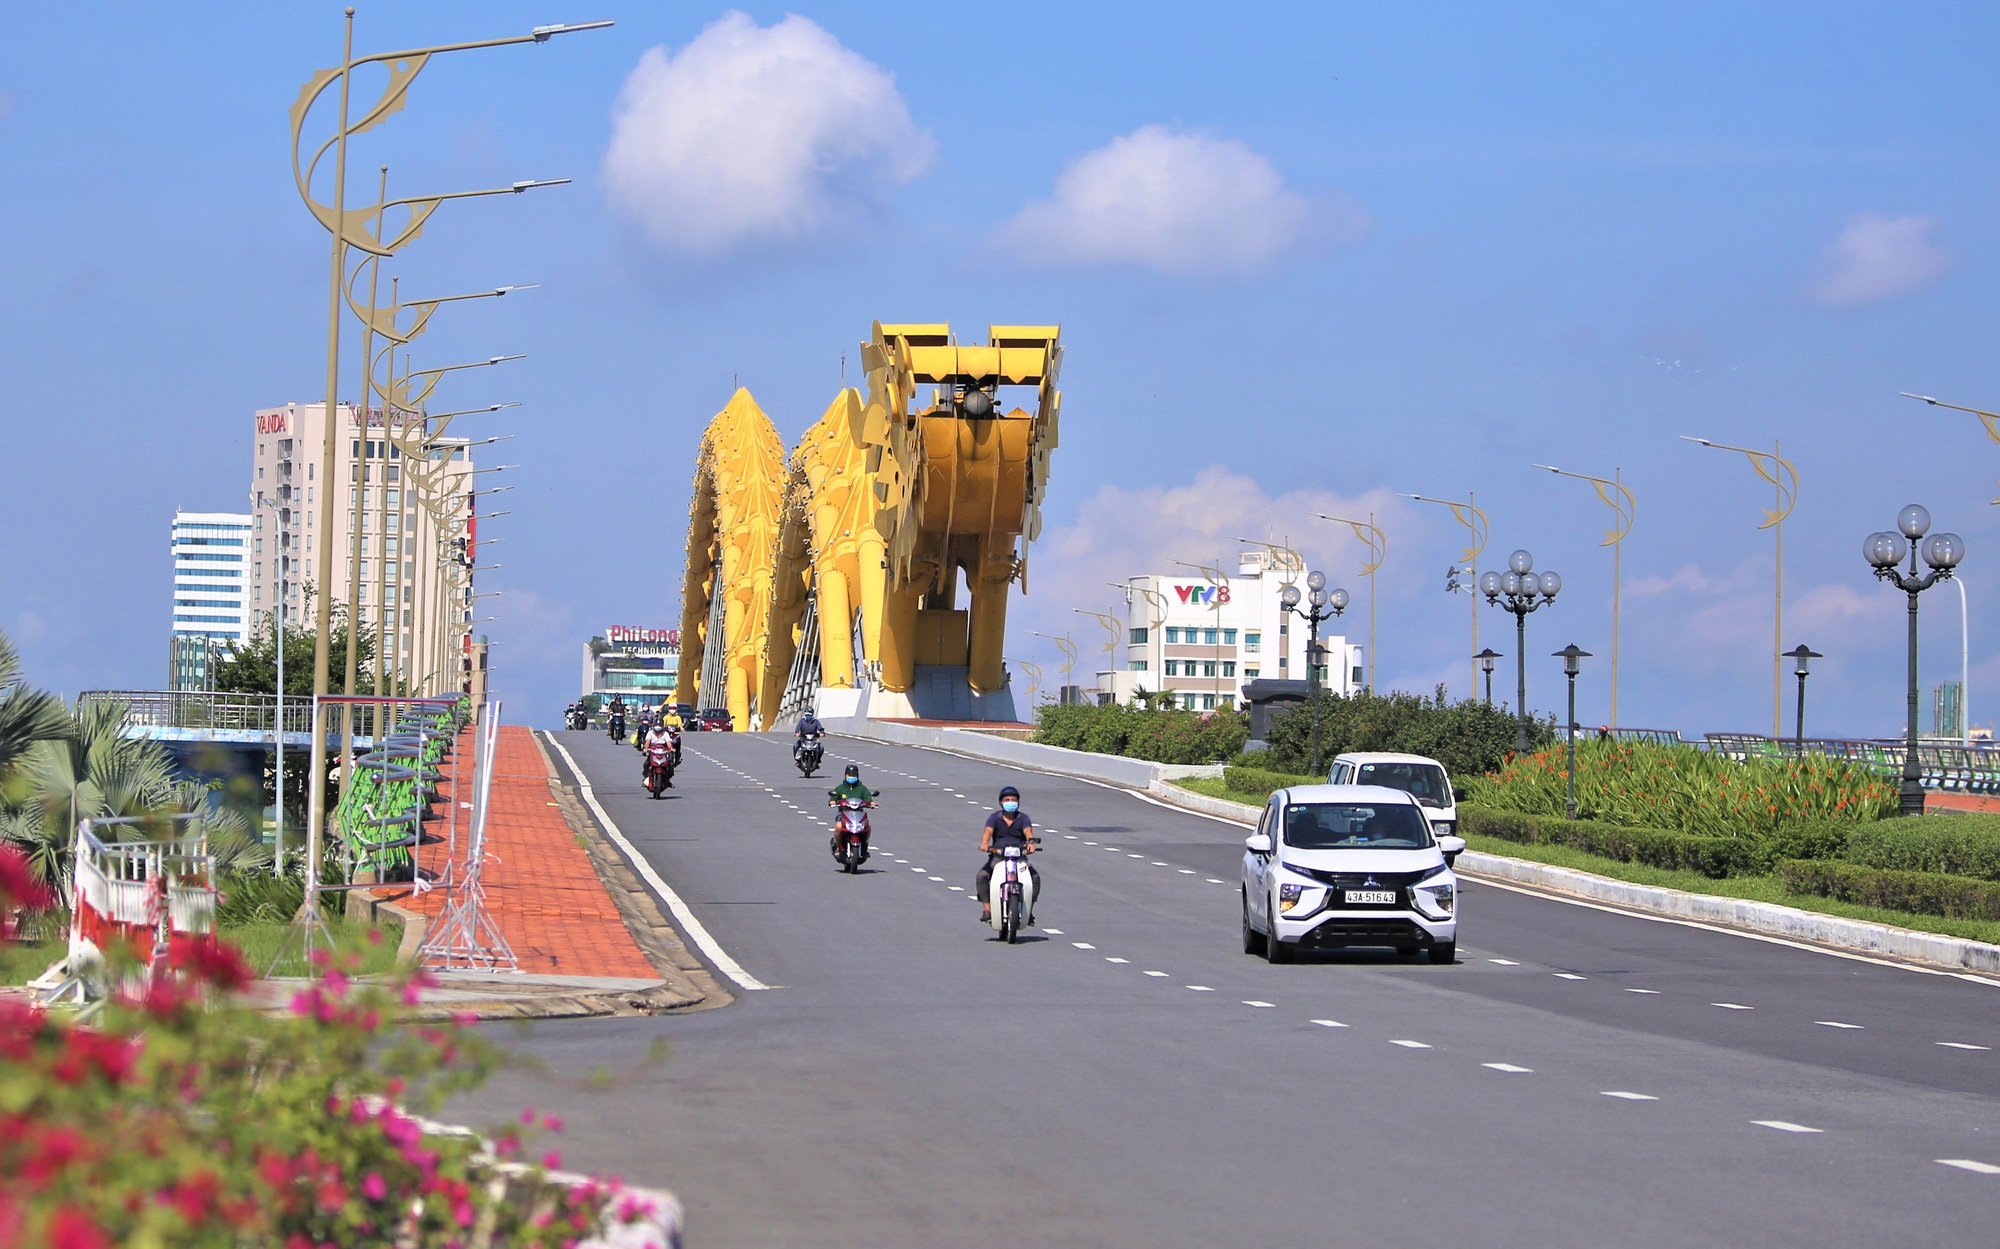 Hôm nay Đà Nẵng 0 ca Covid-19 cộng đồng, thành phố hiện có 32 xã, phường vùng xanh